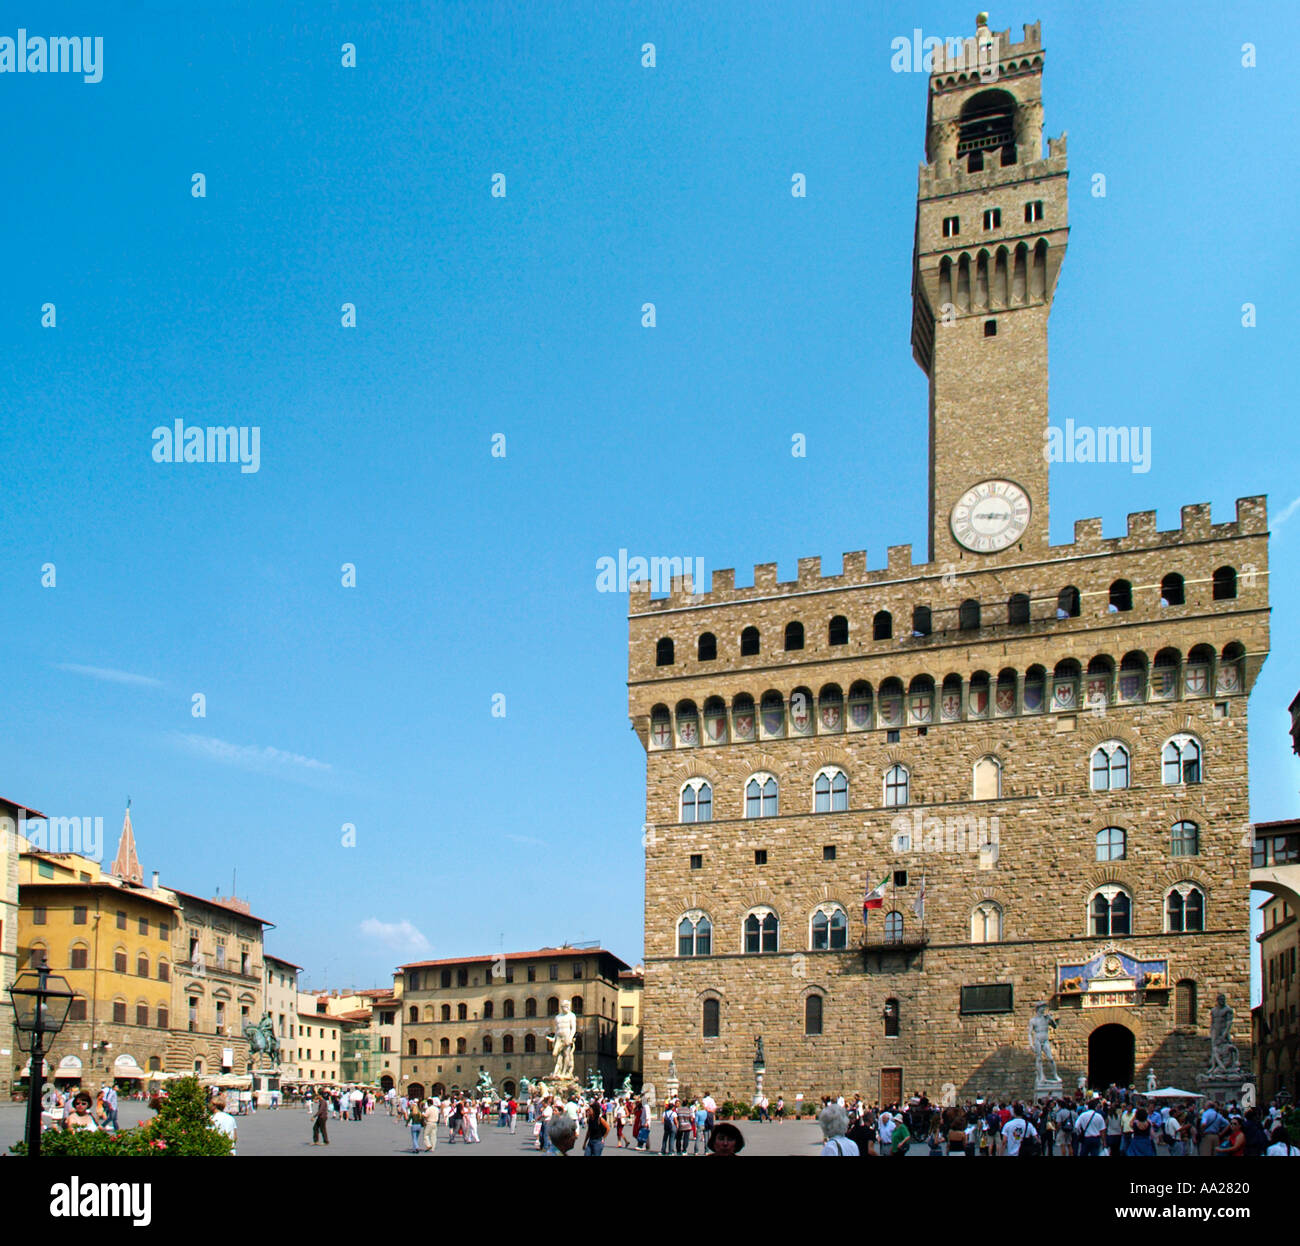 Palazzo Vecchio in Piazza della Signoria, Firenze, Toscana, Italia Foto Stock